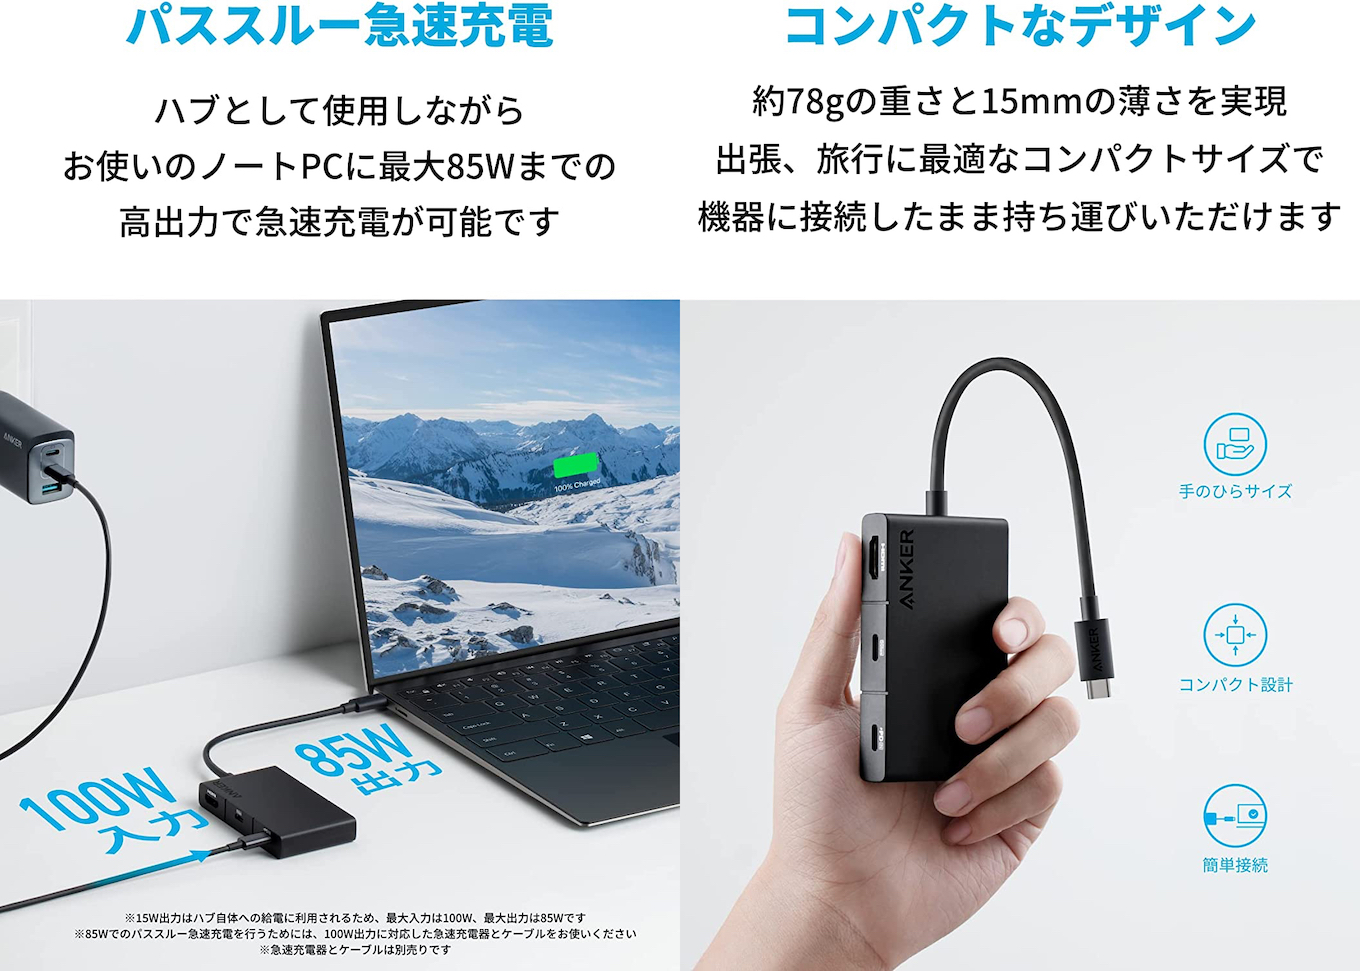 Anker 332 USB-C ハブ (5-in-1, 4K HDMI)